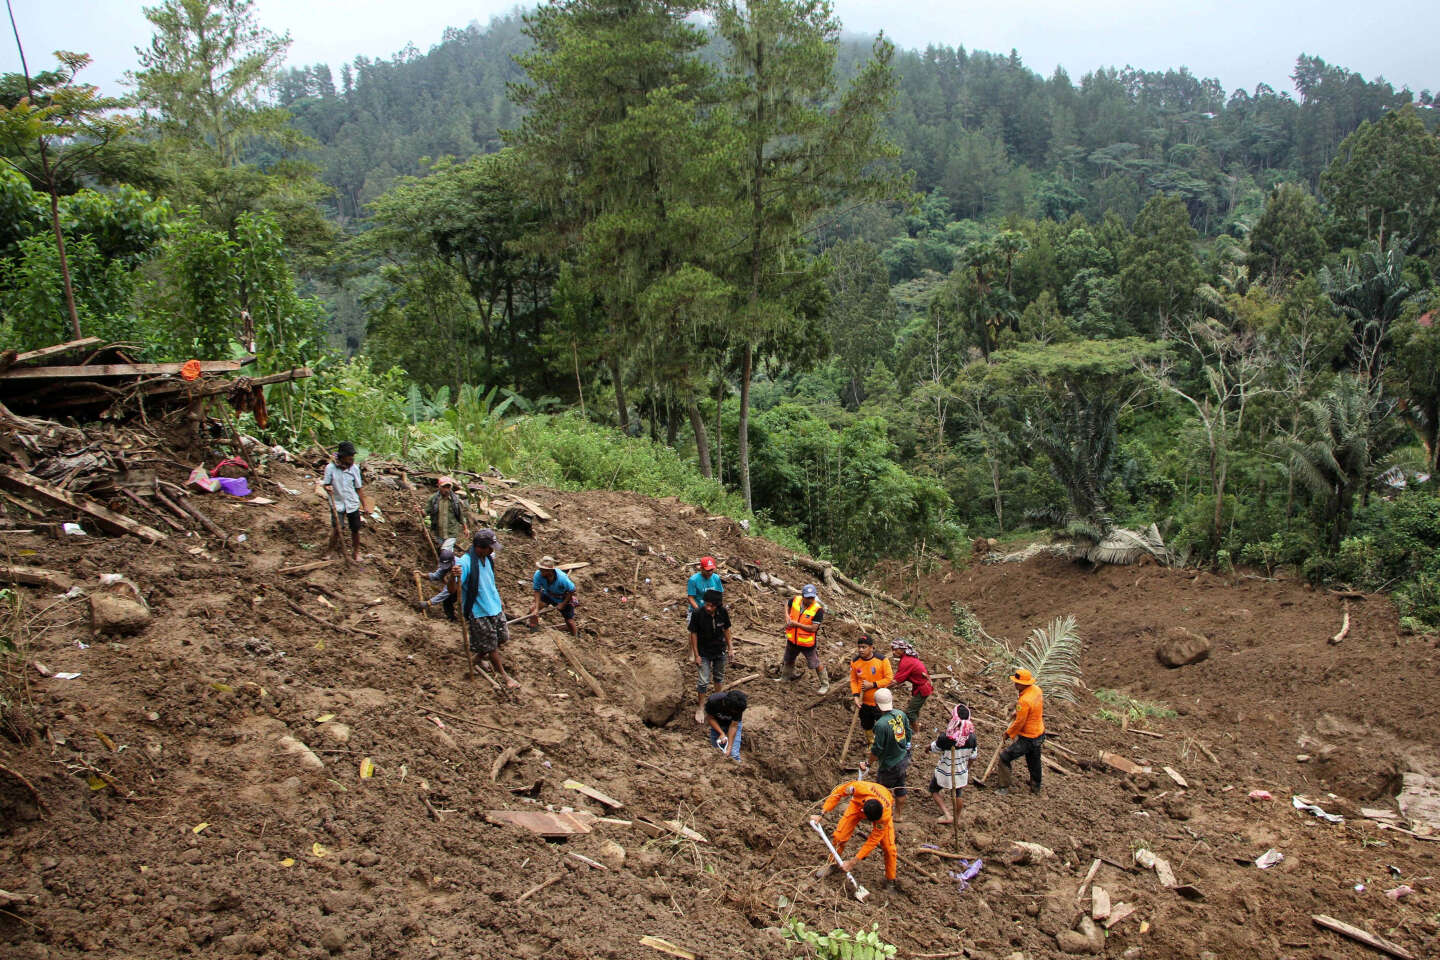 Un glissement de terrain en Indonesie fait 20 morts, selon un bilan définitif